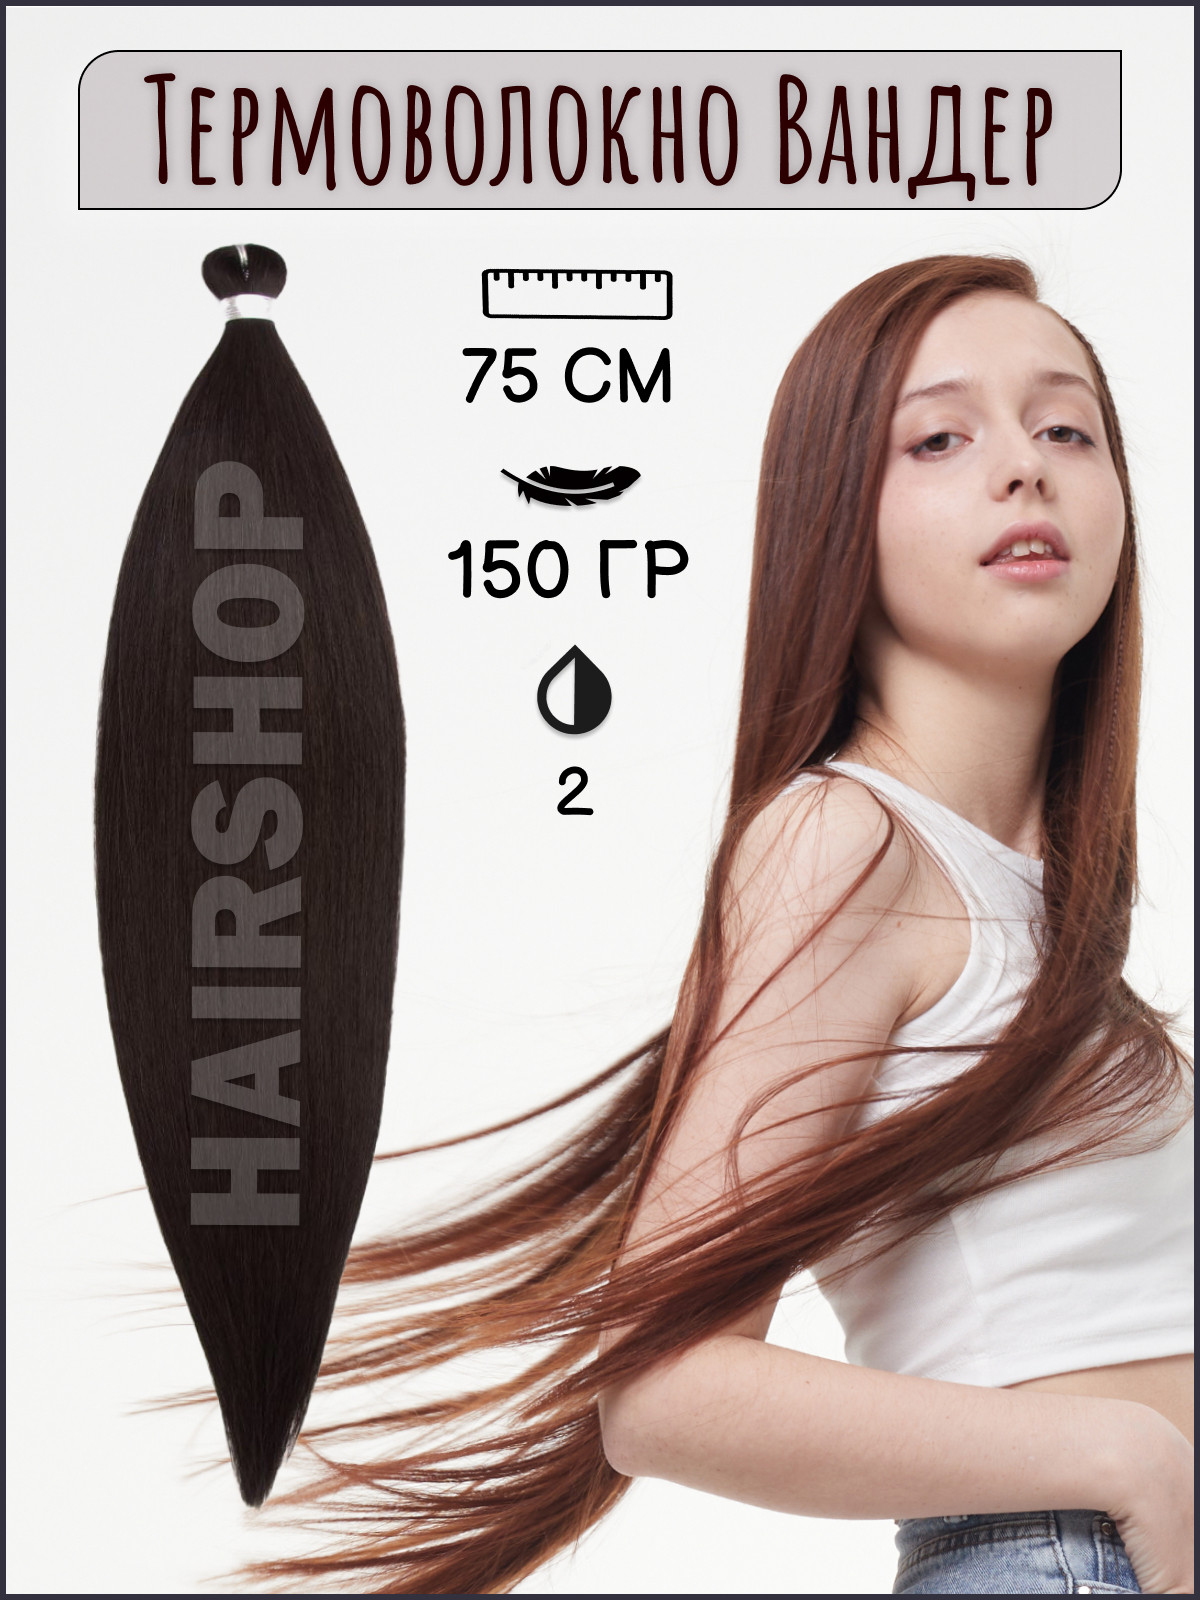 Термоволокно для наращивания Hairshop Вандер 2 150г 150см китай полная история страны